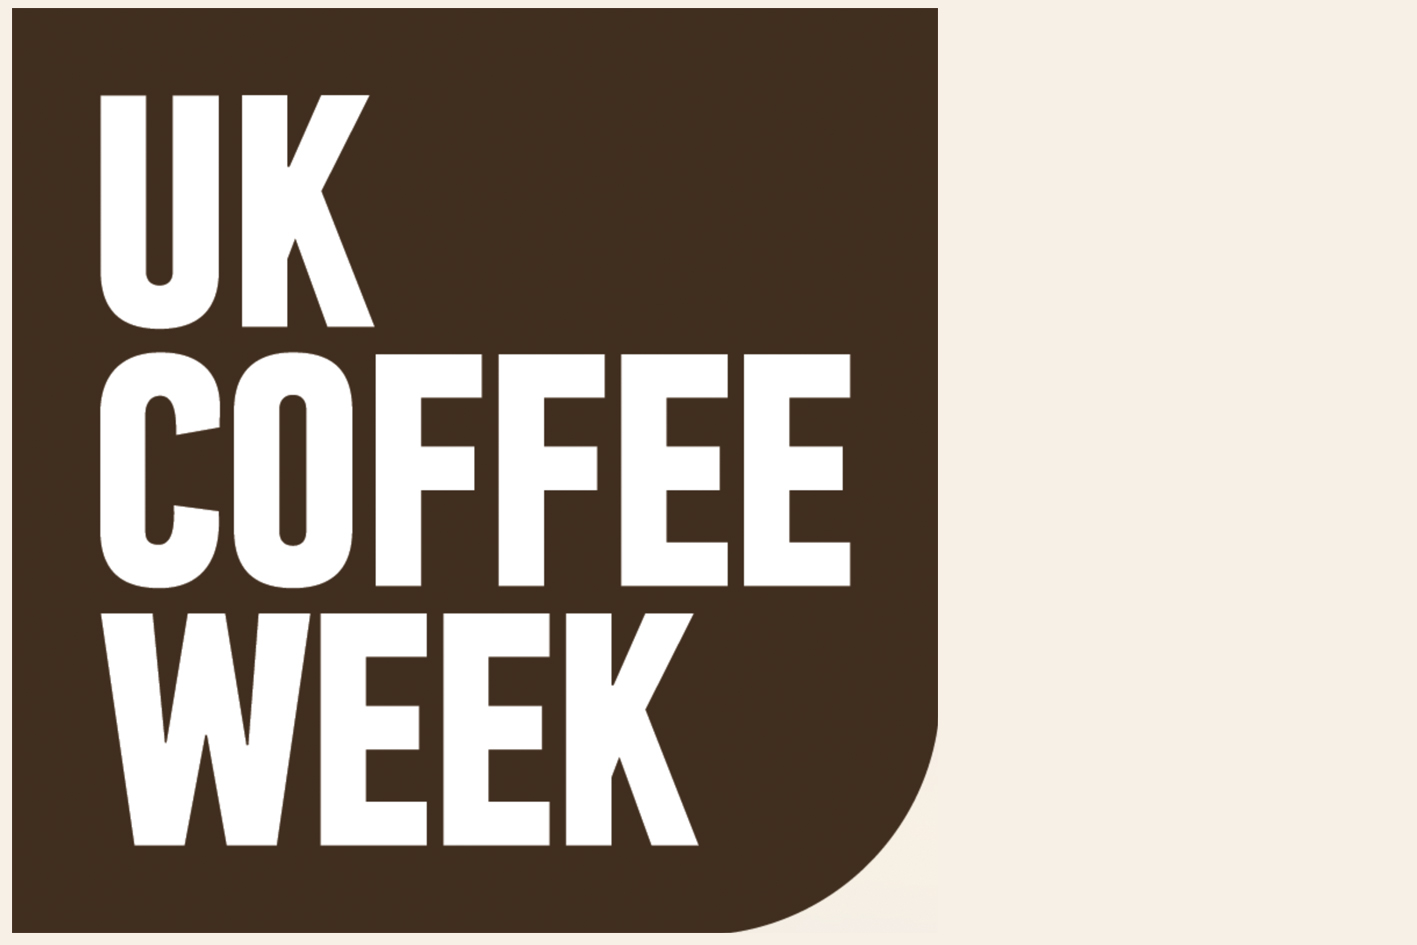 UK Coffee Week